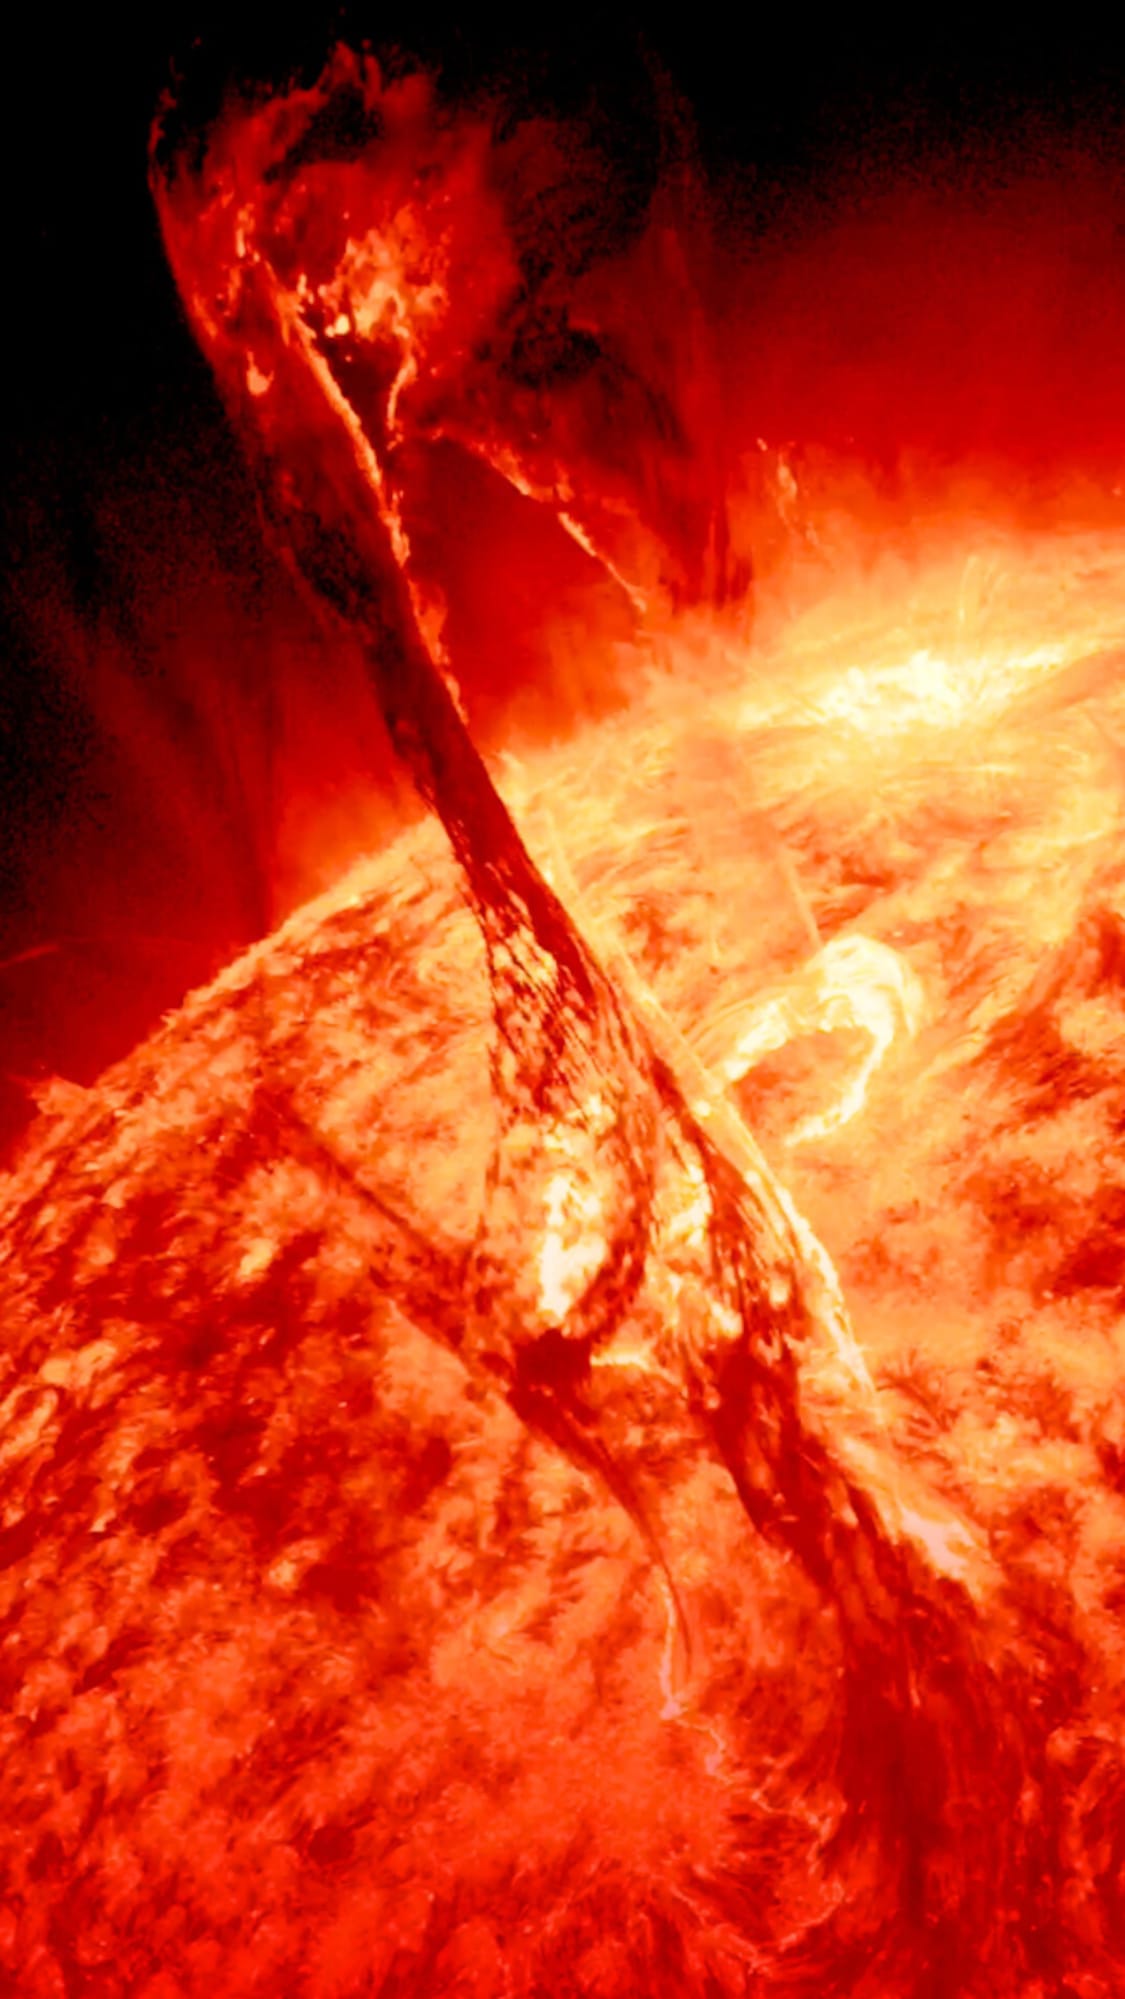 Une éruption solaire captée par le Solar Dynamics Observatory de la NASA en août 2012.